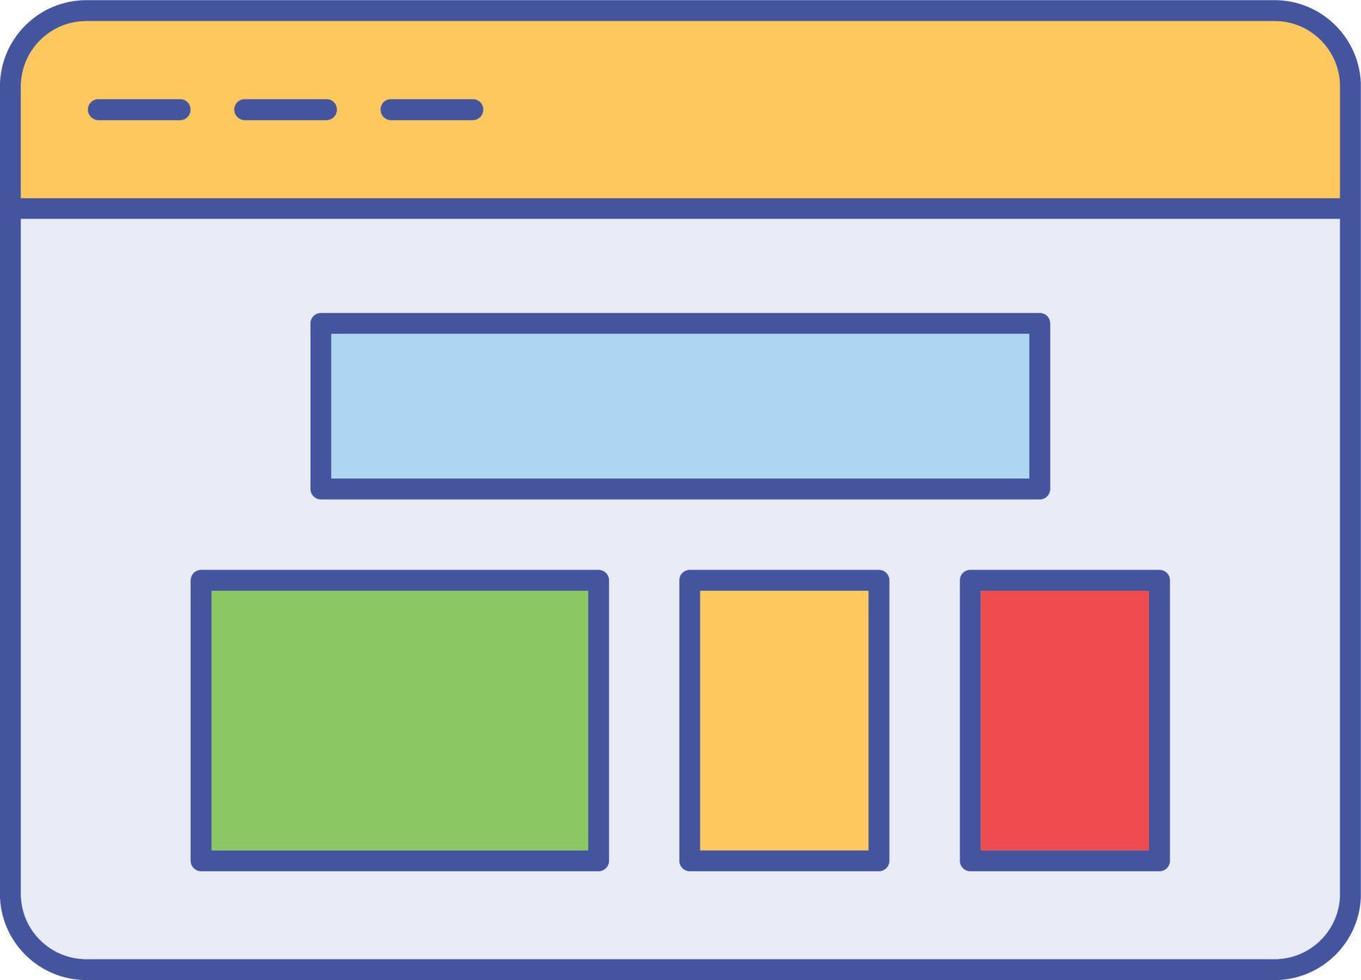 icona vettoriale isolata del layout del browser che può essere facilmente modificata o modificata